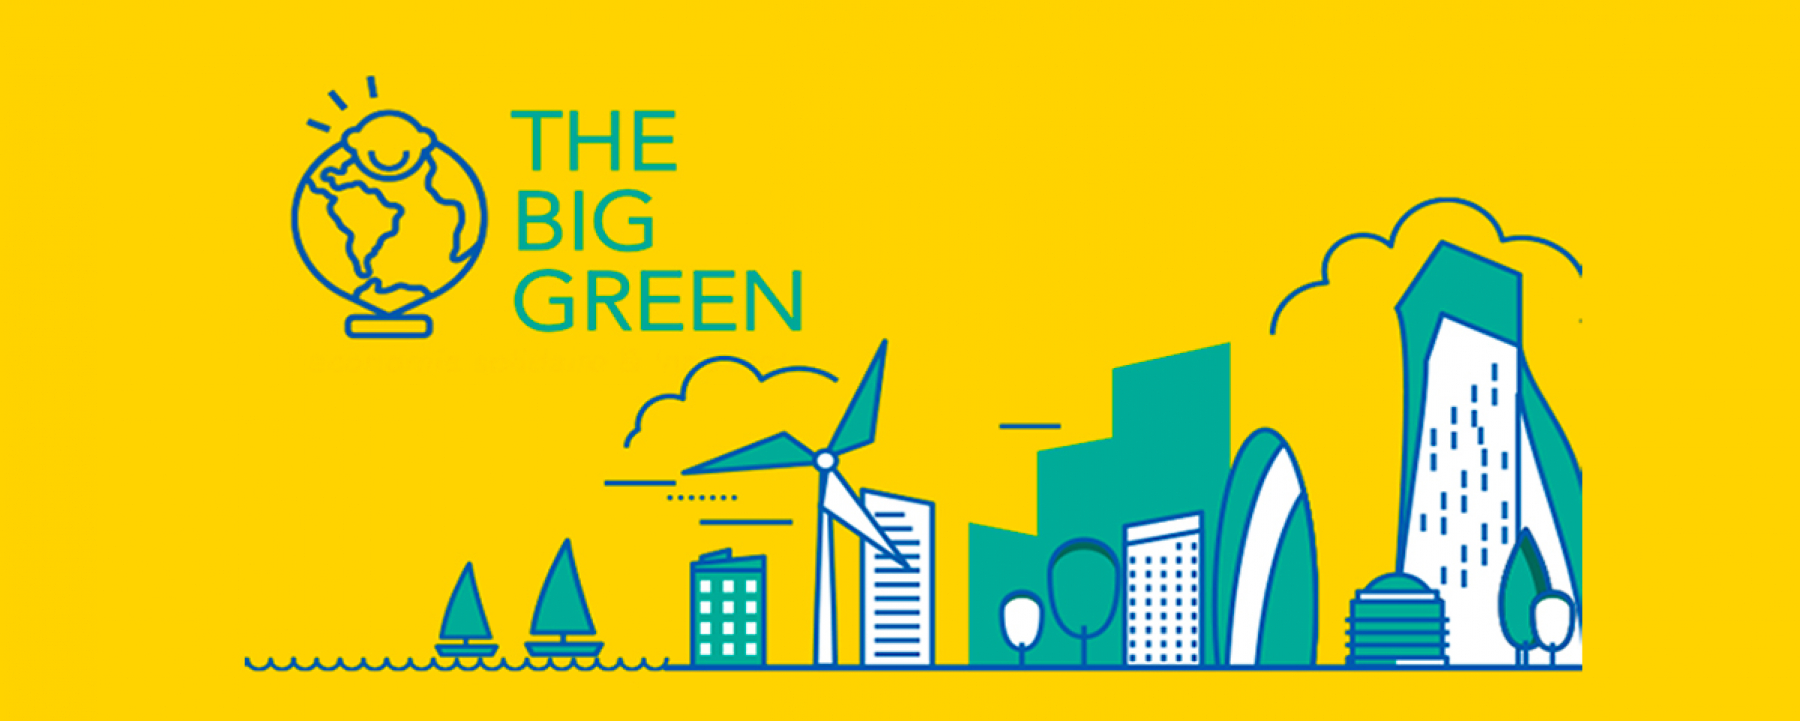 The Big Green, une rencontre organisée par le Groupe Meet and Com les 24 et 25 novembre 2020 